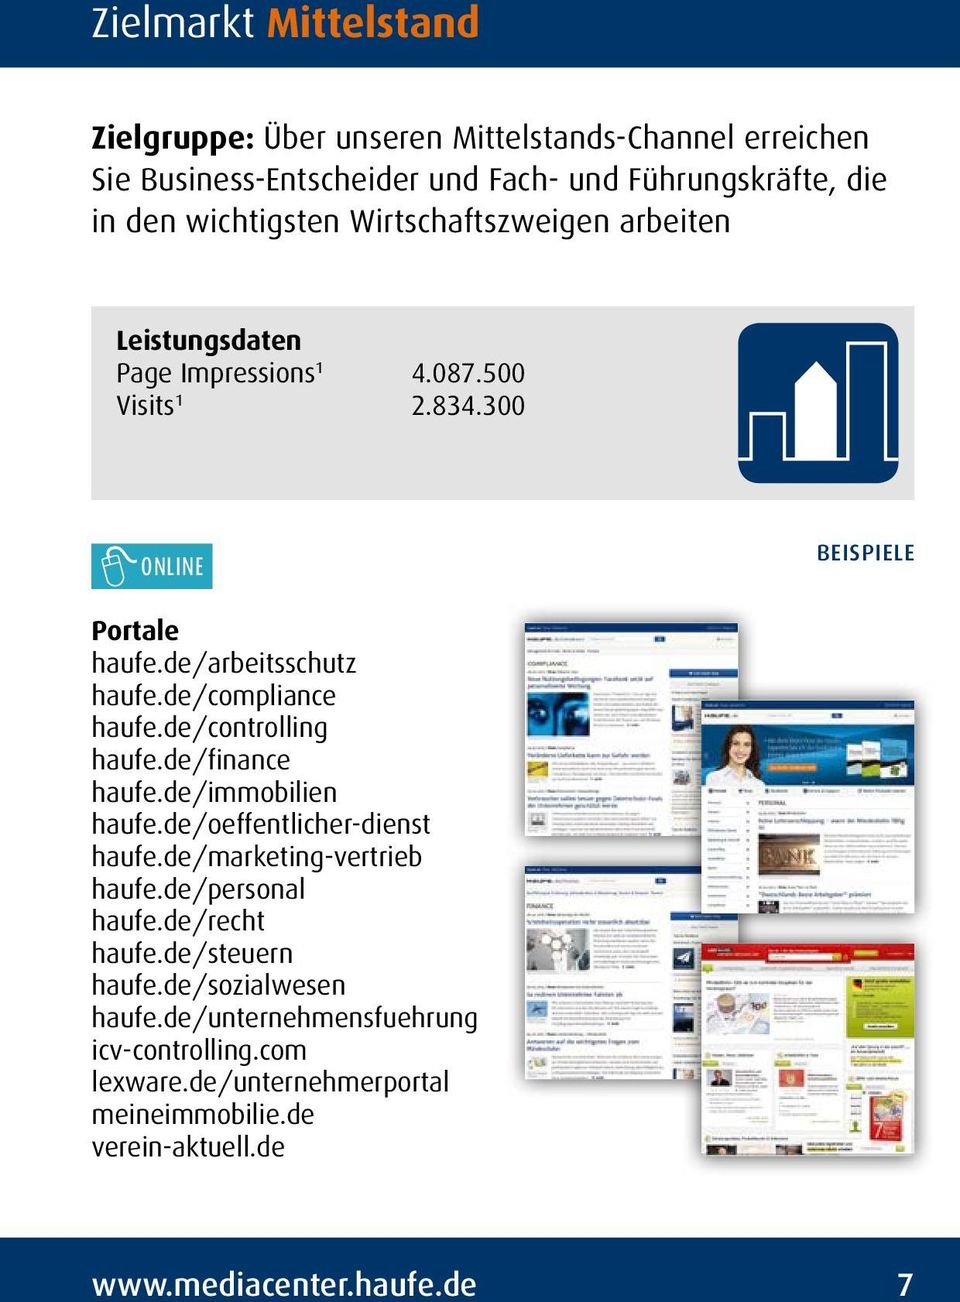 de/controlling haufe.de/finance haufe.de/immobilien haufe.de/oeffentlicher-dienst haufe.de/marketing-vertrieb haufe.de/personal haufe.de/recht haufe.